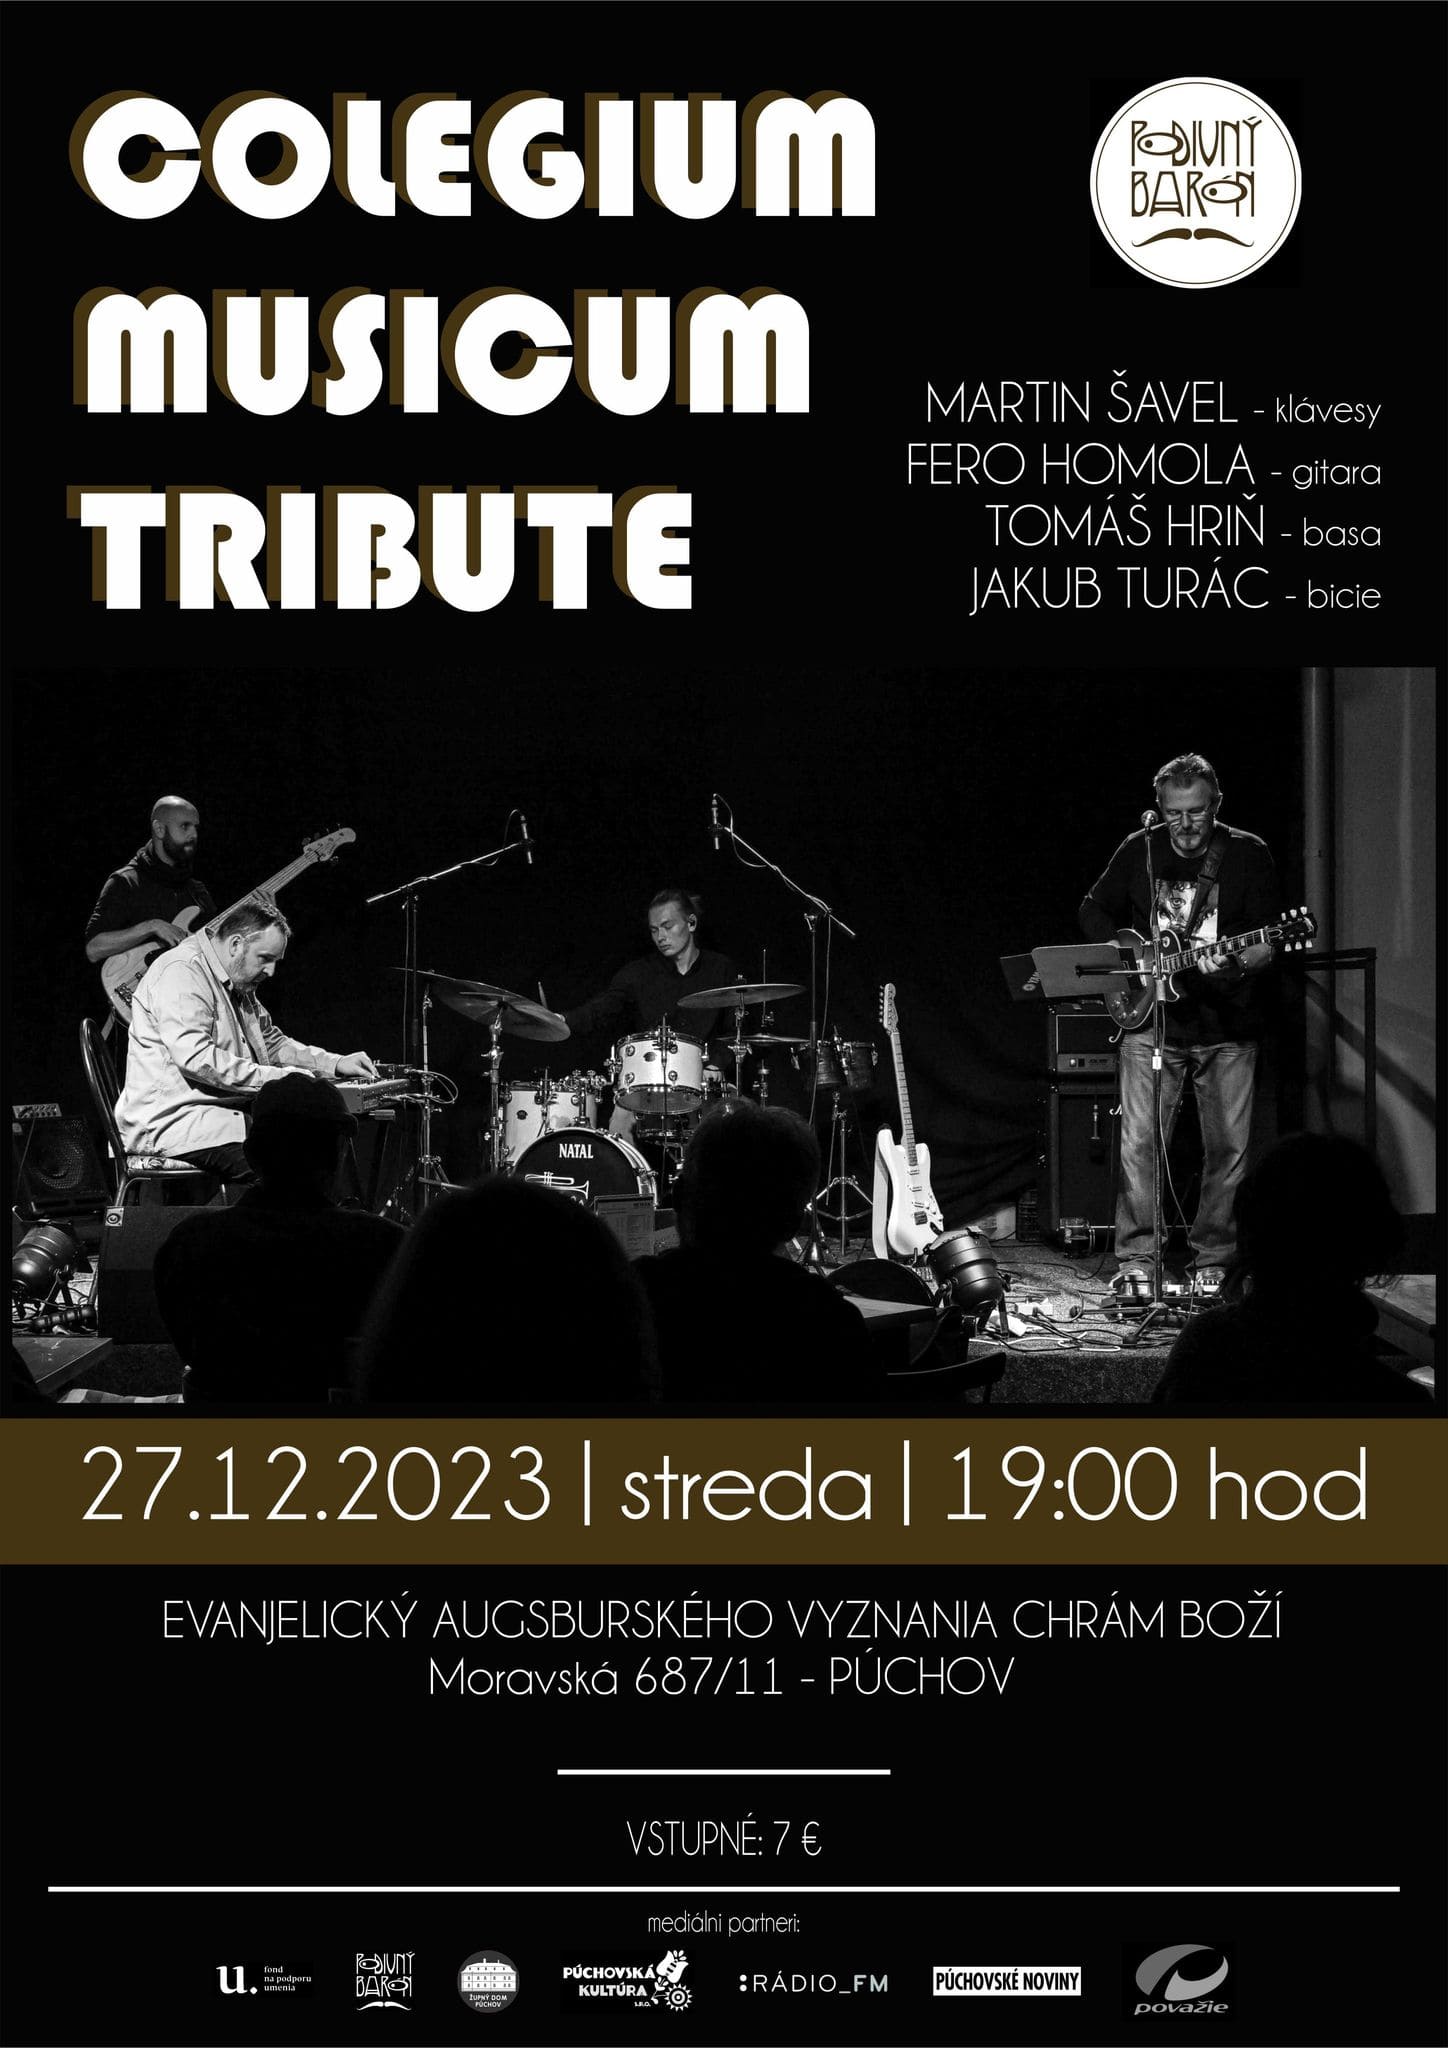 Collegium Musicum tribute